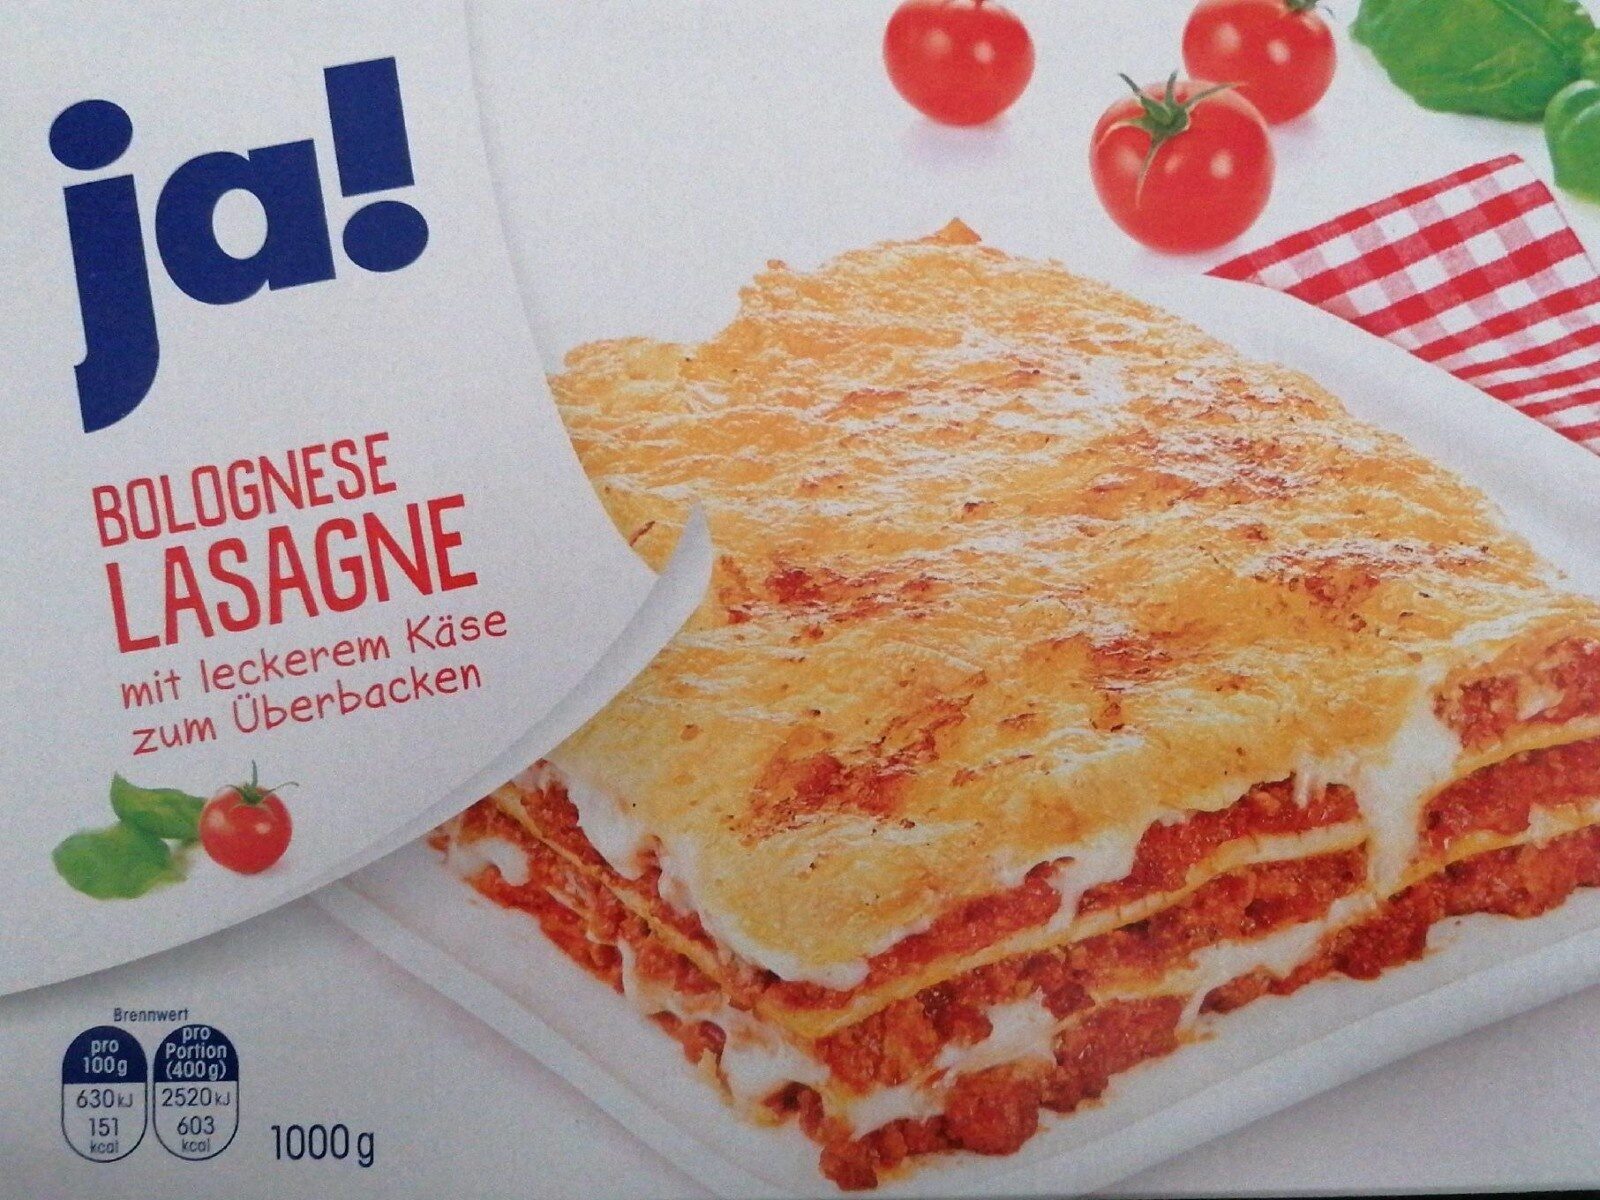 Bolognese Lasagne - Product - de